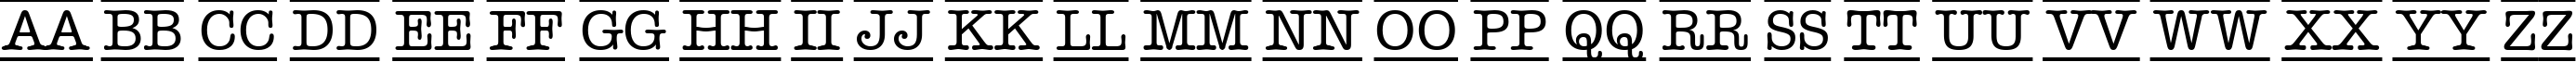 Пример написания английского алфавита шрифтом a_OldTyperDcFr